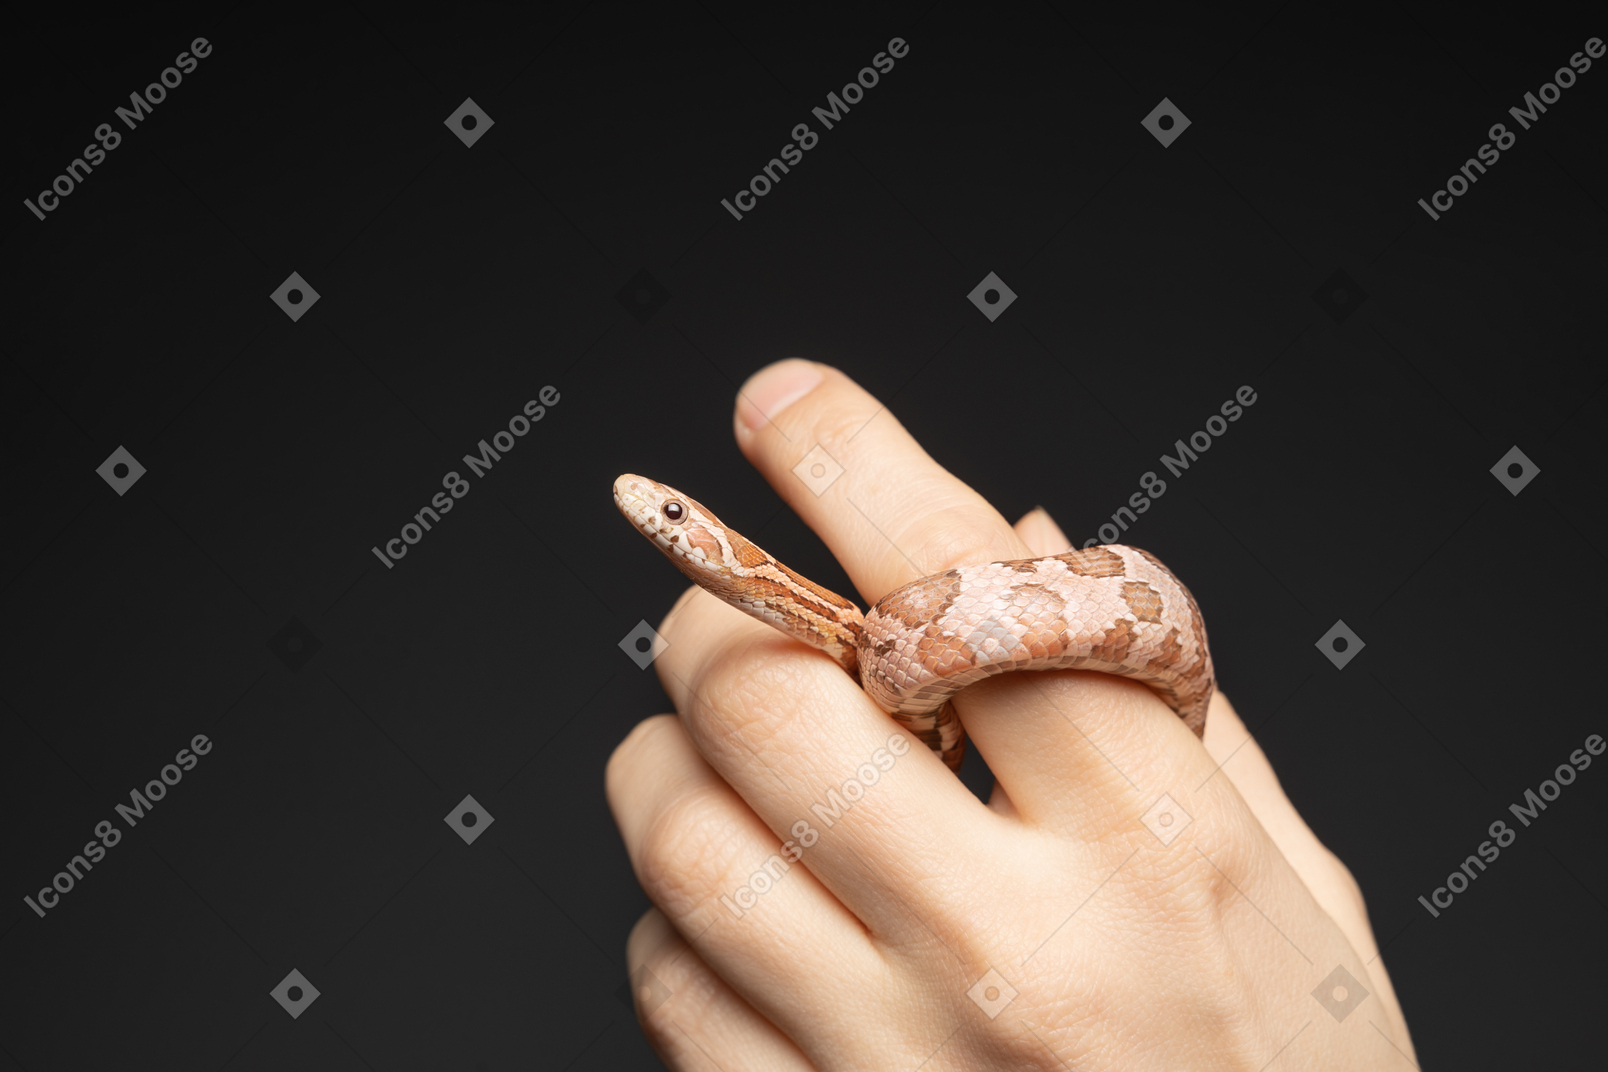 Pequeña serpiente de maíz curvándose alrededor del dedo humano